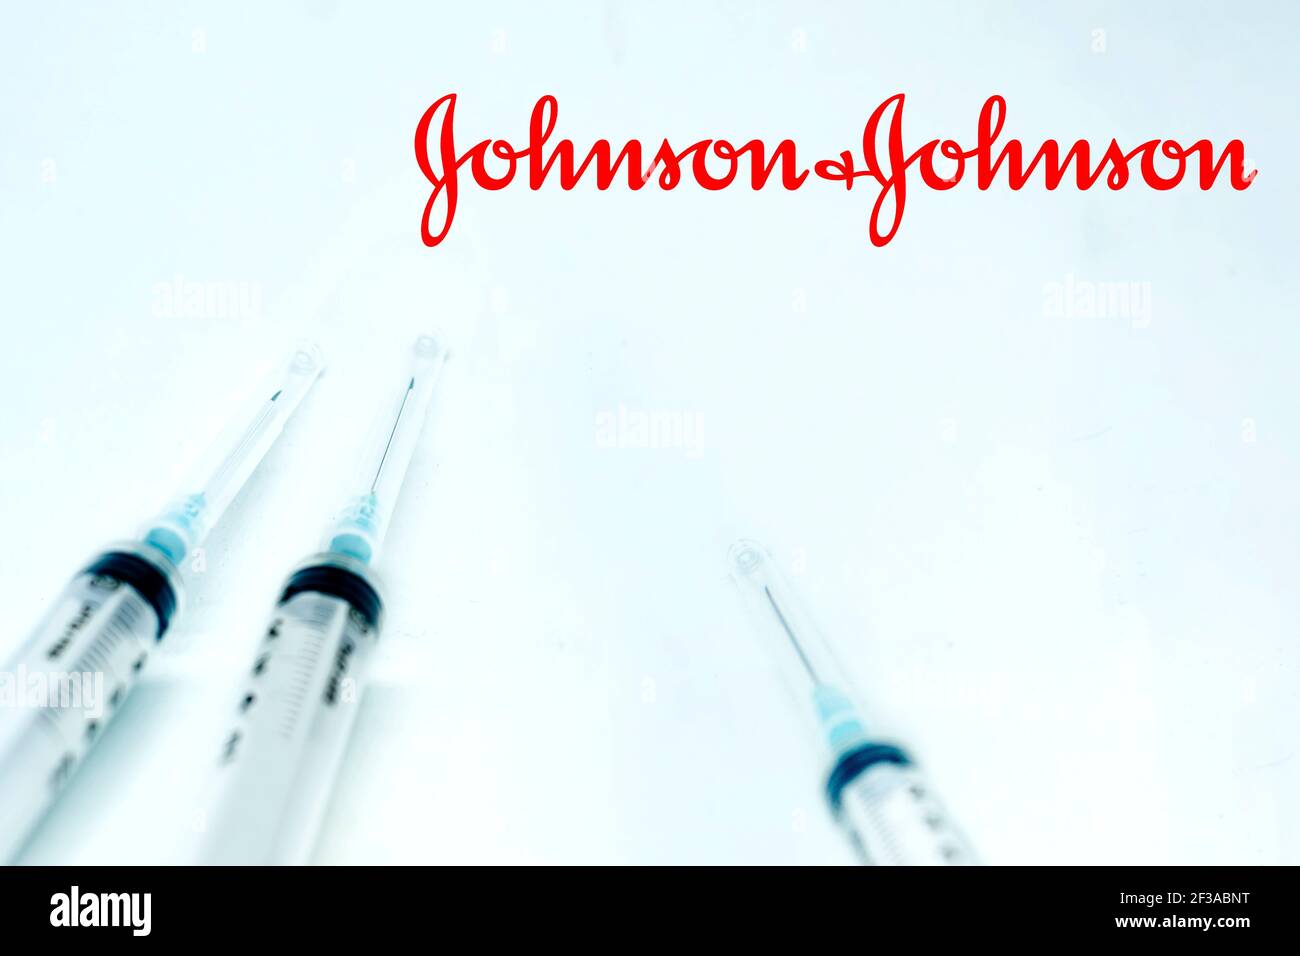 New Brunswick, NJ, USA, 10 février 2021 : trois seringues à côté du logo Johnson & johnson isolées sur fond blanc. Santé et prévention. J Banque D'Images